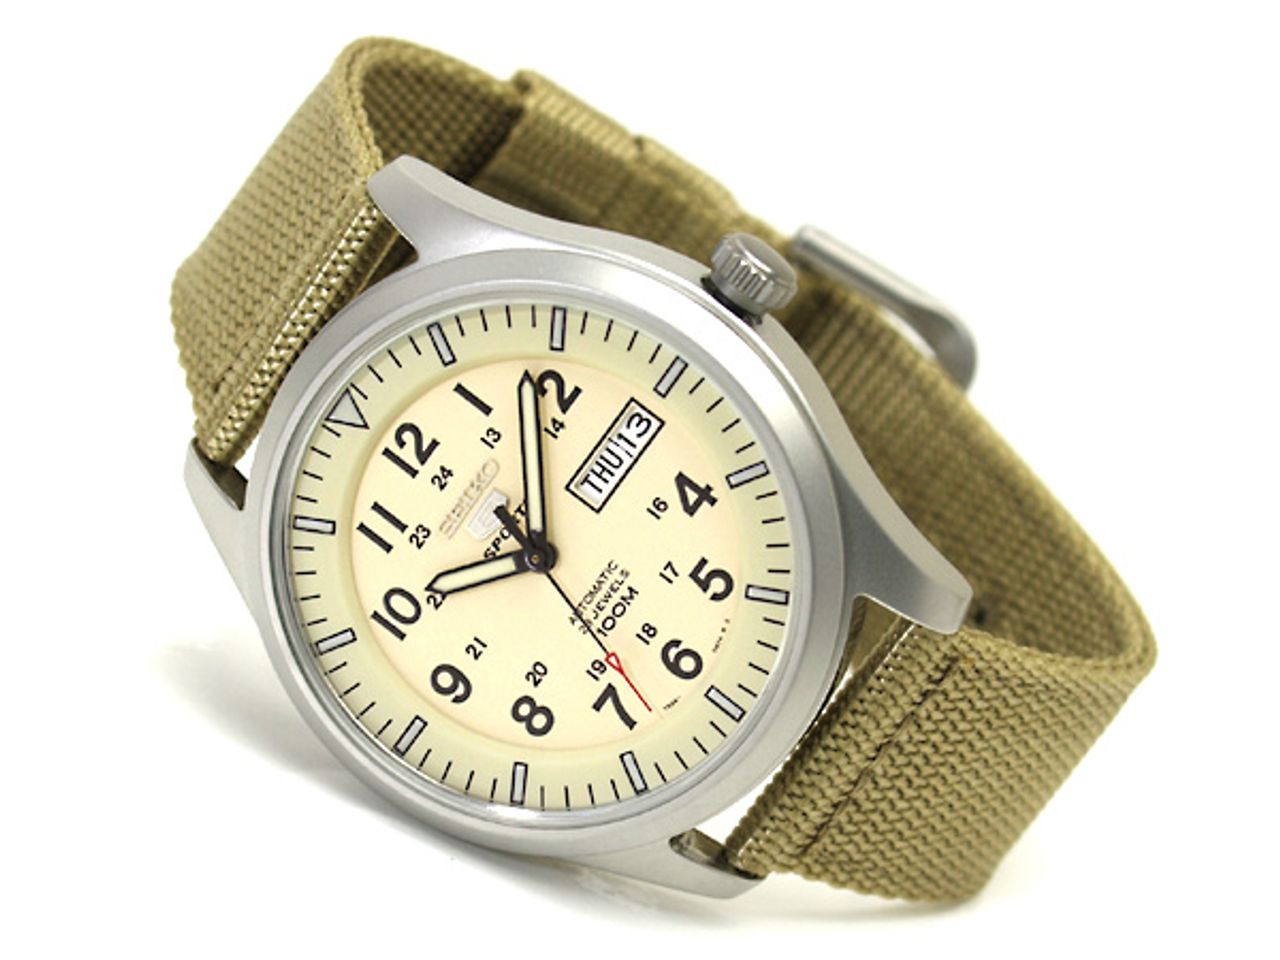 Đồng hồ Seiko 5 SNZG07k1 cho nam (bản xuất Châu Âu) 1